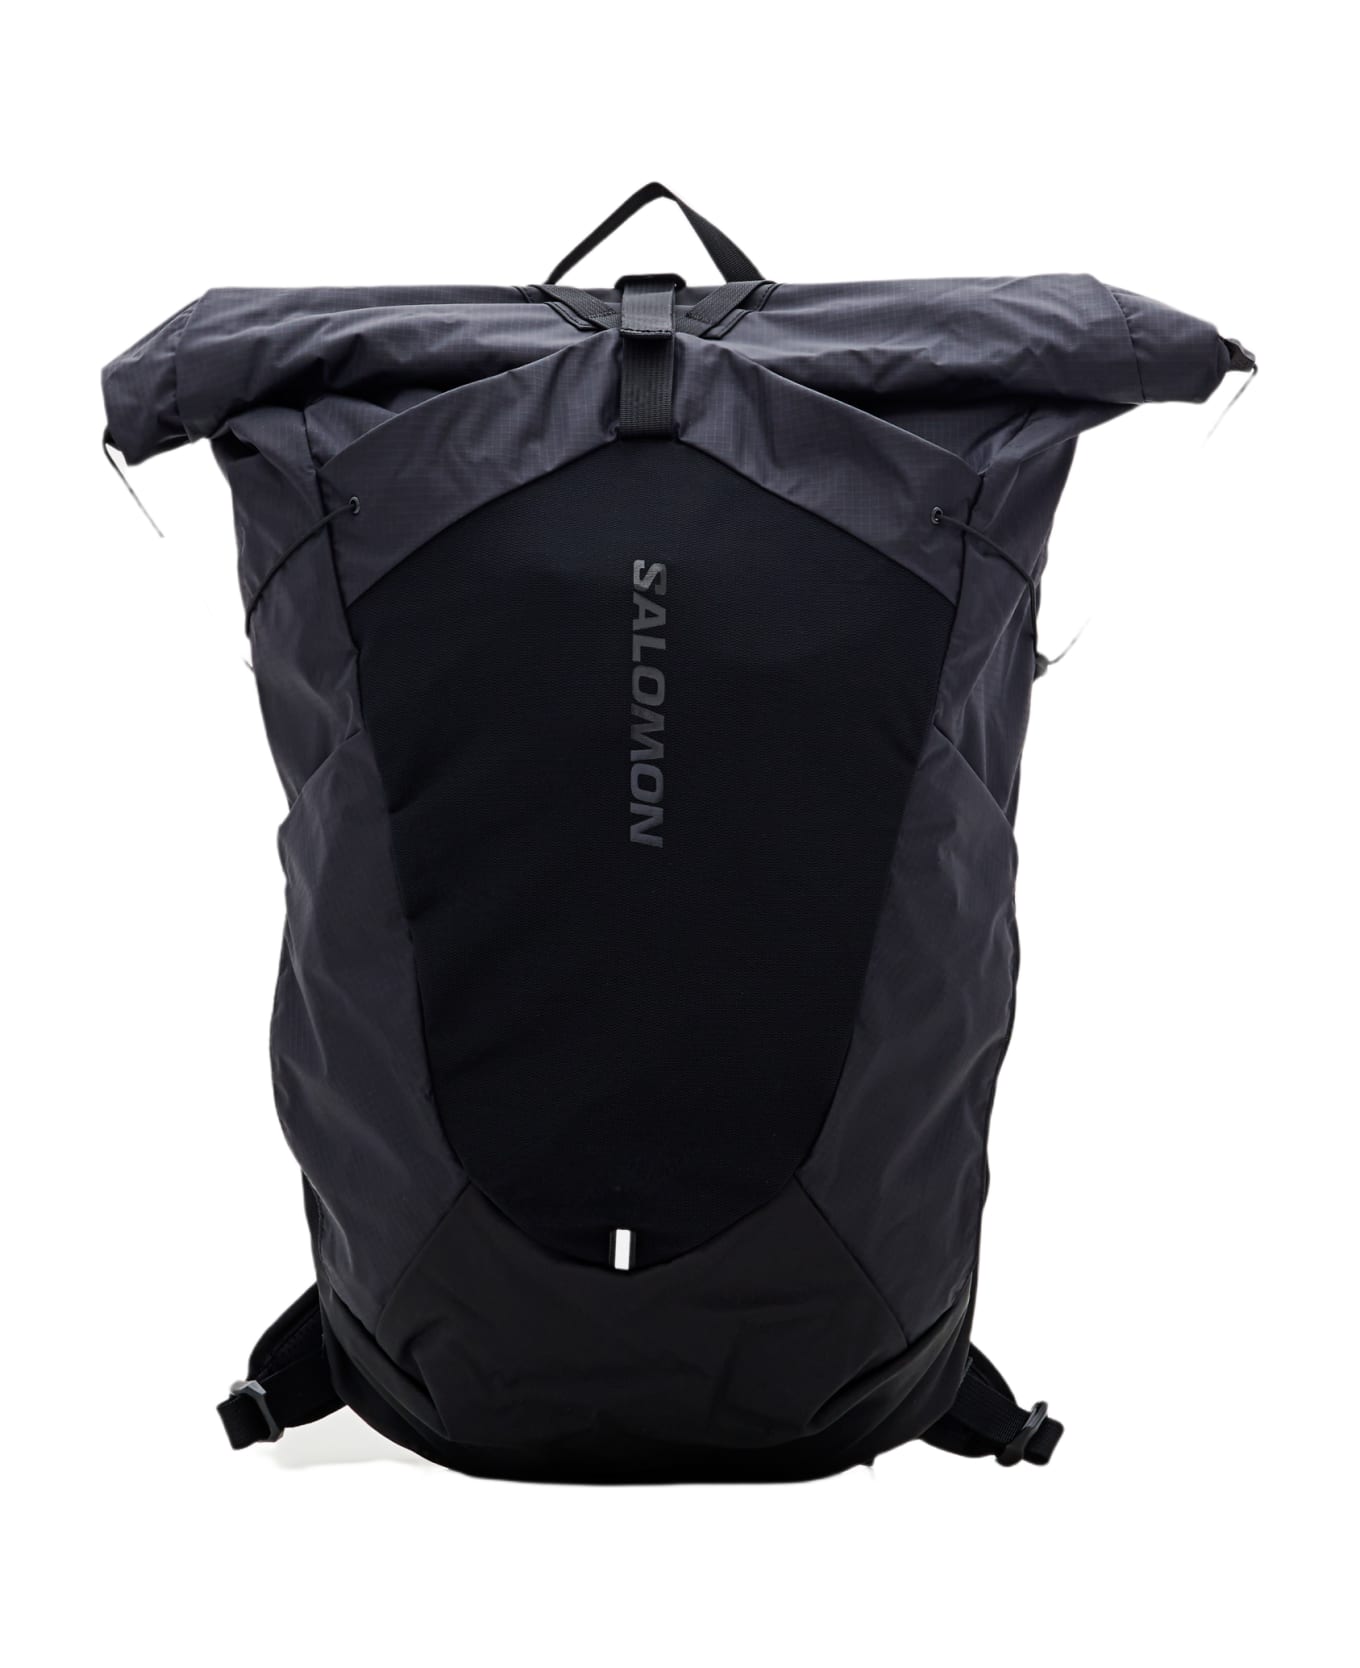 Salomon Acs 20 Backpack - Black バックパック